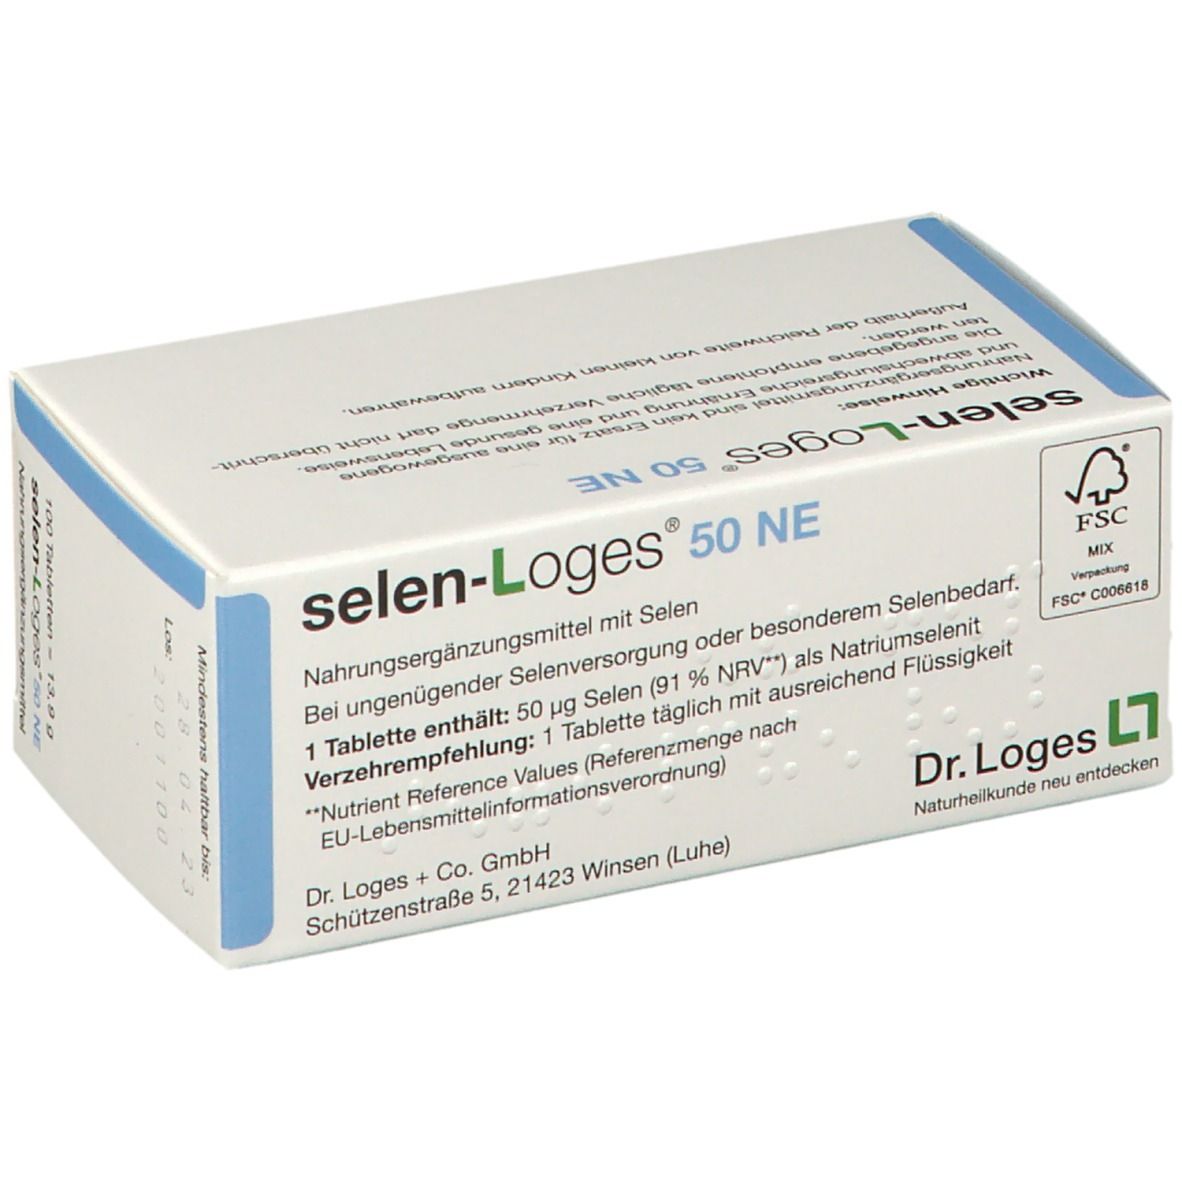 selen-Loges® 50 NE Tabletten